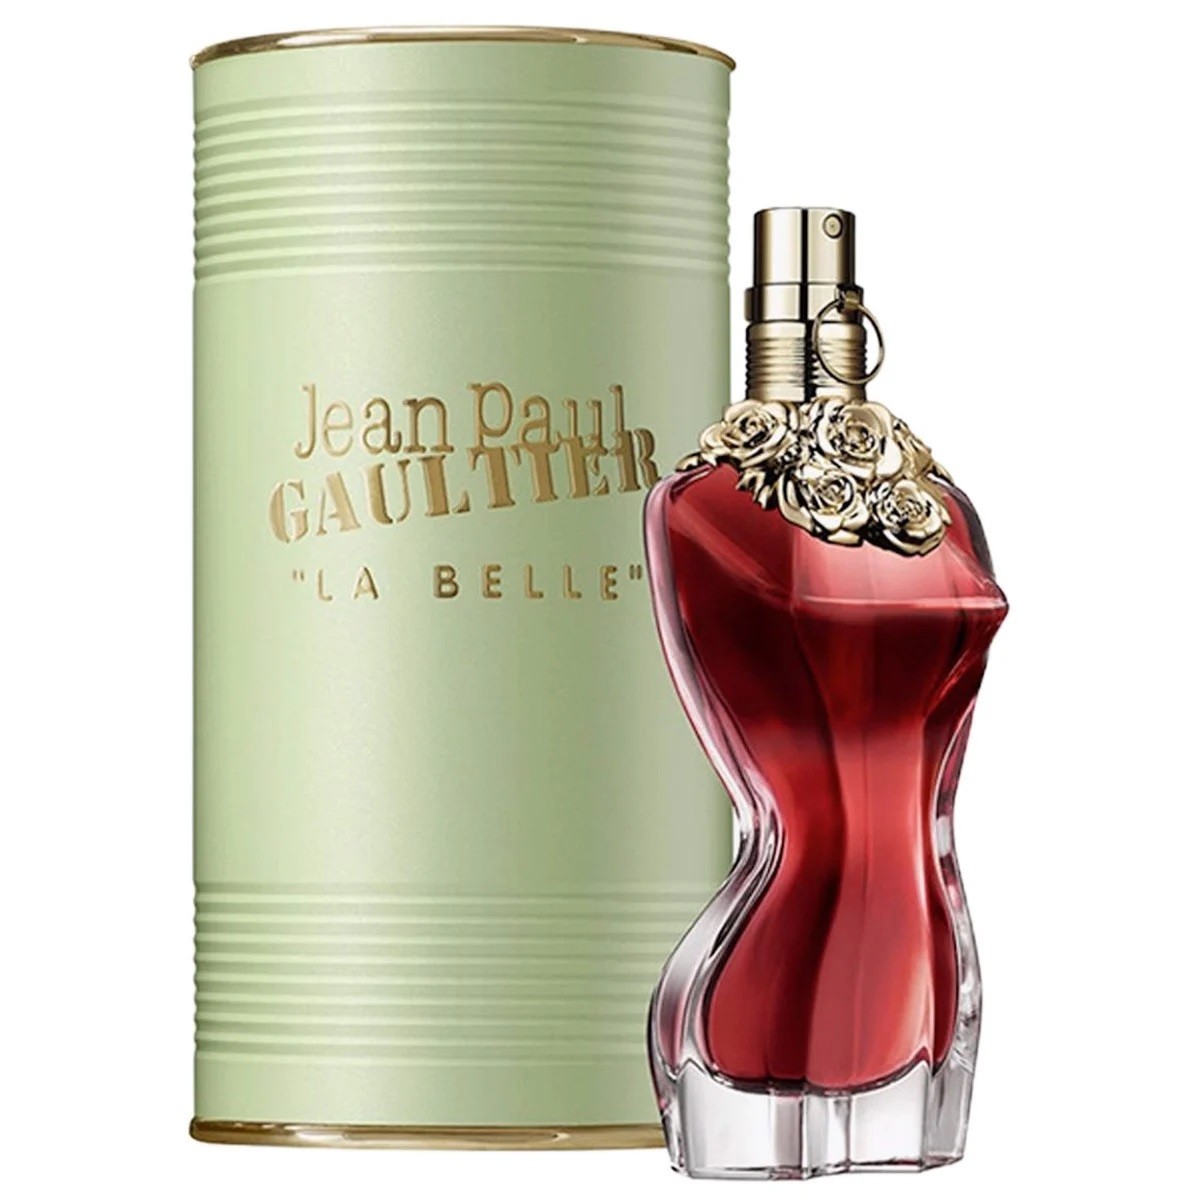  Nước Hoa nữ La Belle Jean Paul Gaultier Eau De Parfum